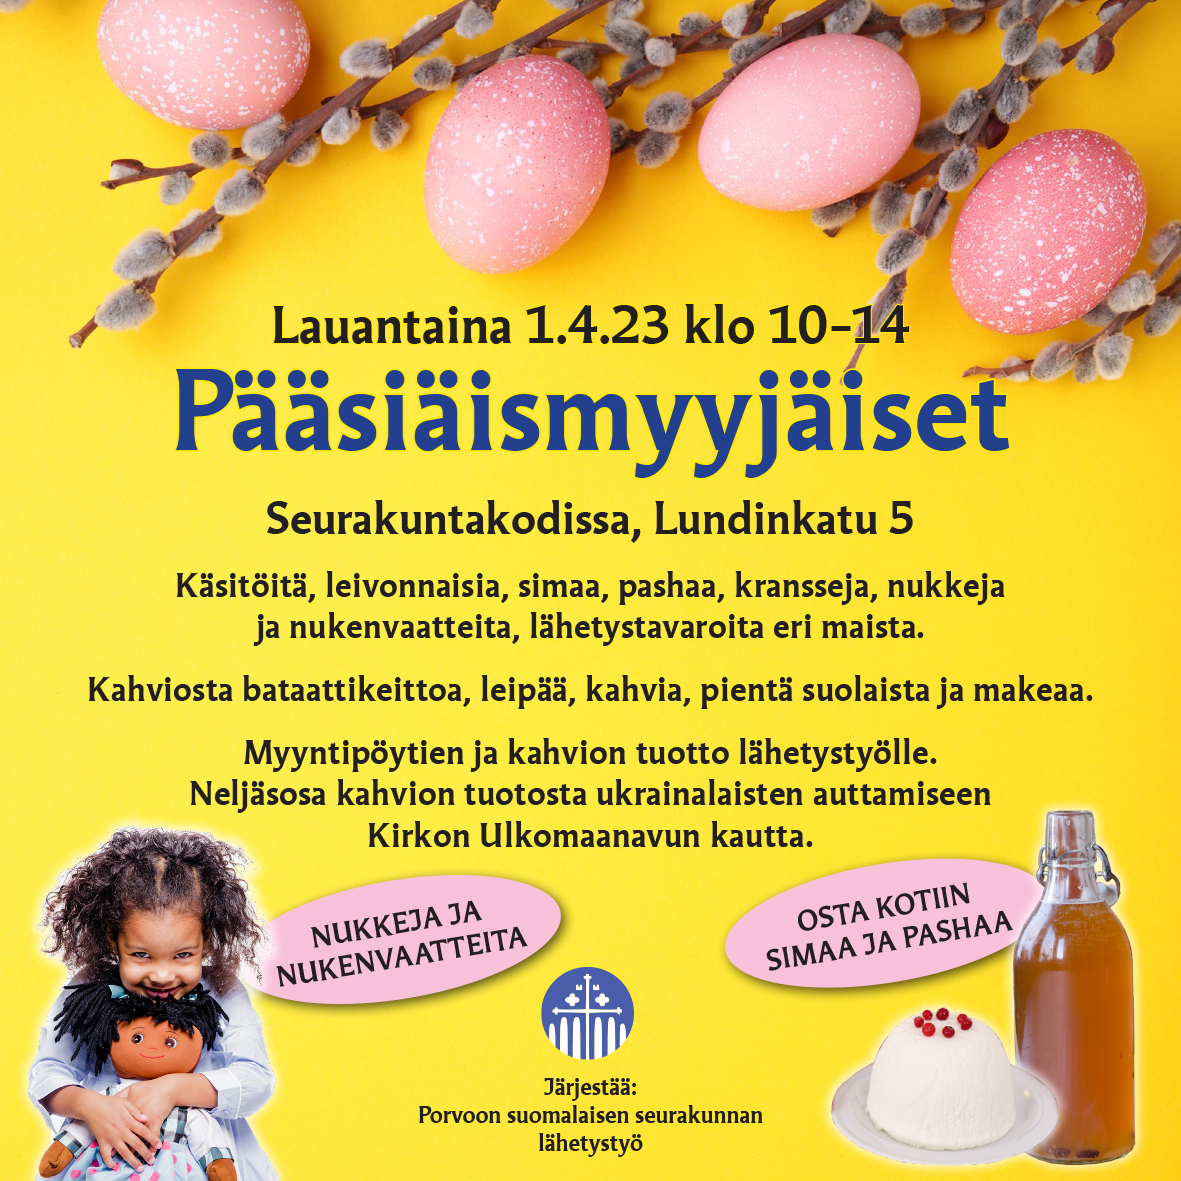 Pääsiäismyyjäisten 1.4.23 klo 10-14 mainos. Kuvassa pajunkissoja, värikkäitä munia, simapullo, pasha ja lapsi nuken kanssa.